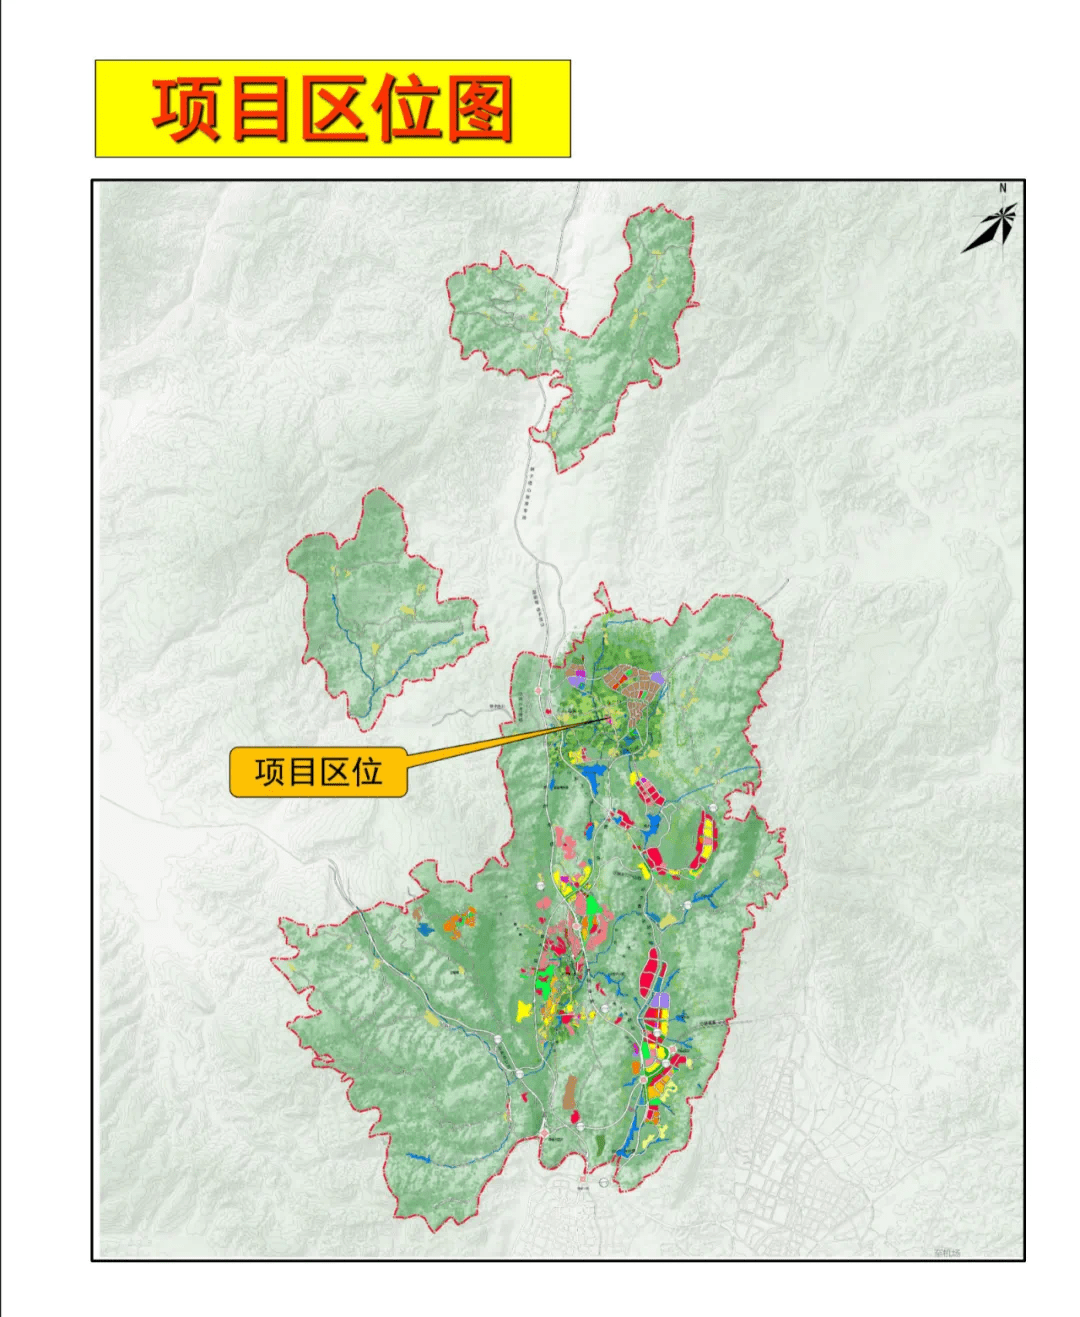 五华区自卫村规划图片